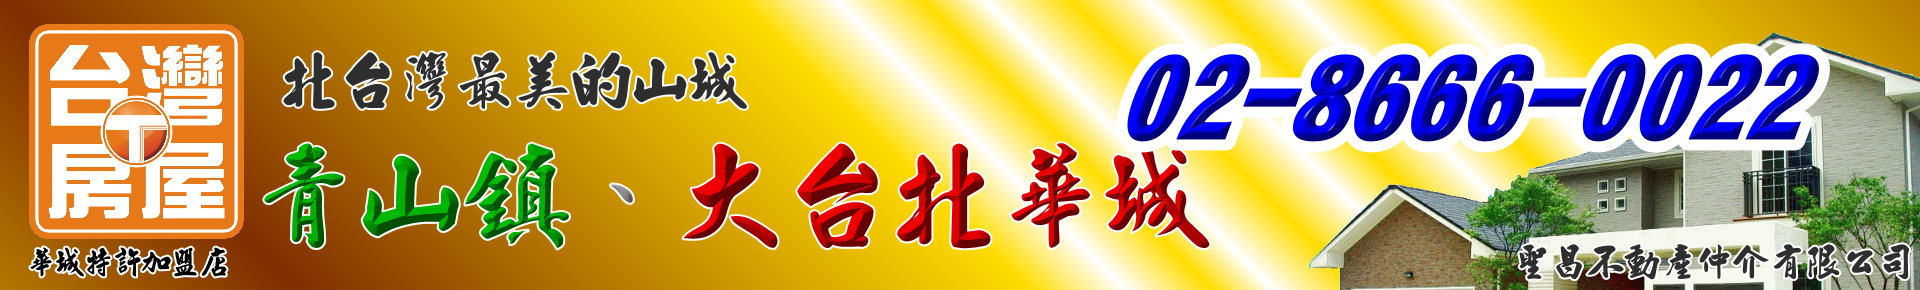 I70_富裔山/英式城堡/ 無敵市景-青山鎮、大台北華城【台灣房屋/銷售團隊】北台灣最美的山城！ logo